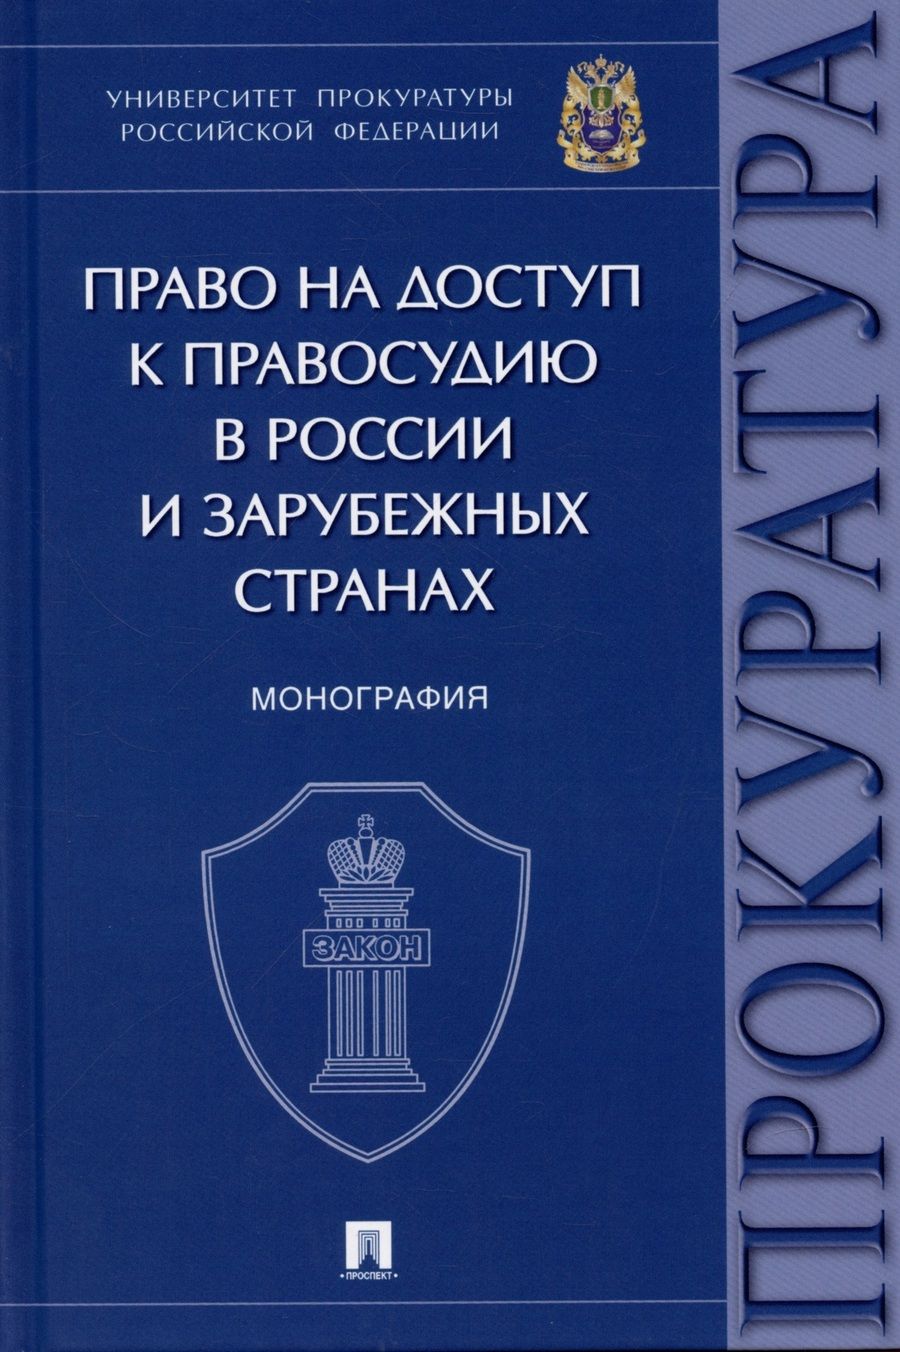 Обложка книги "Право на доступ к правосудию в России и зарубежных странах. Монография."